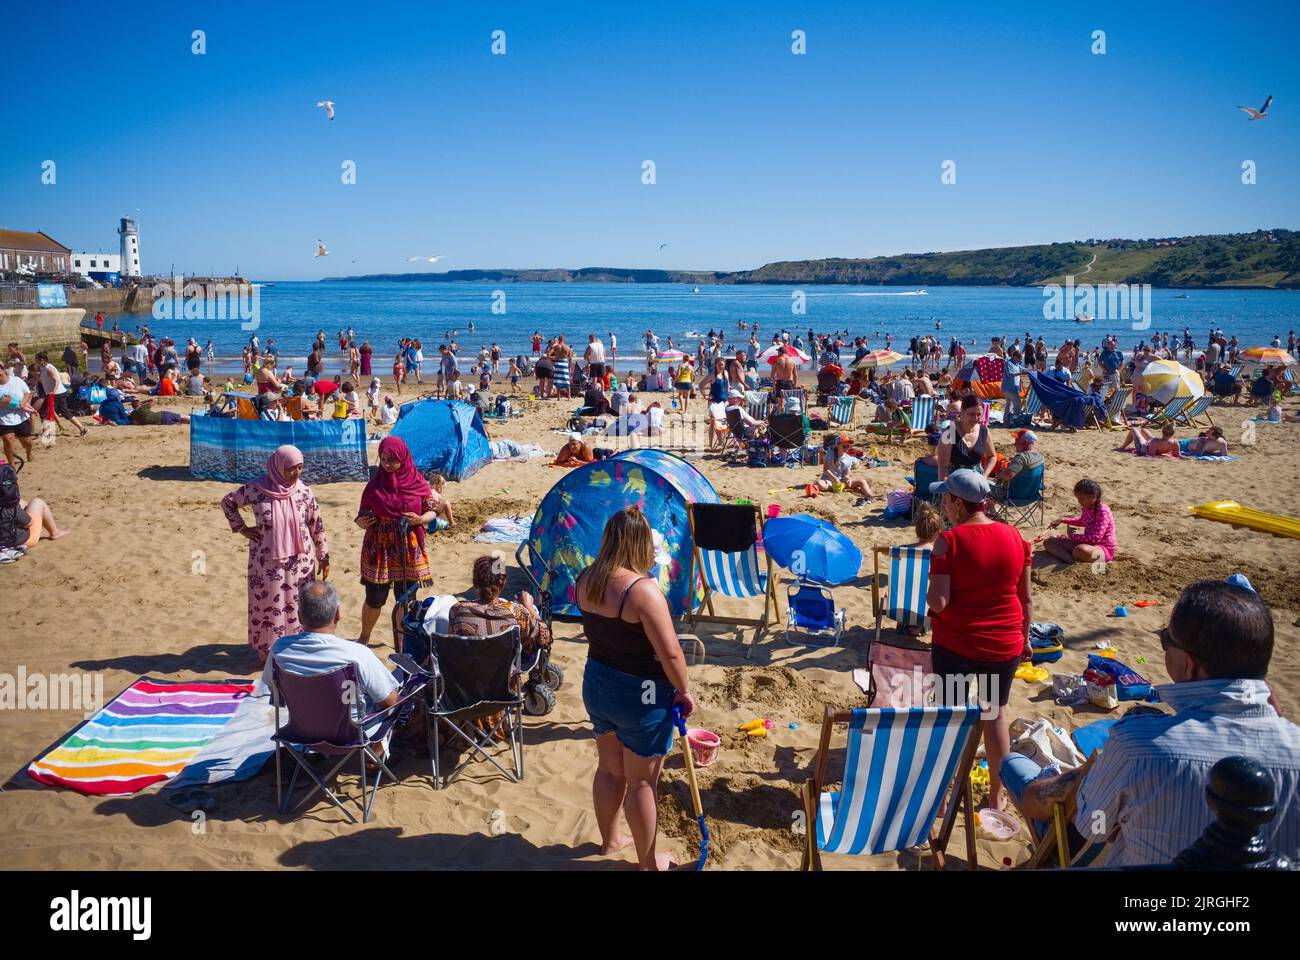 La parte concurrida de la playa de Scarborough en un fin de semana de verano Foto de stock